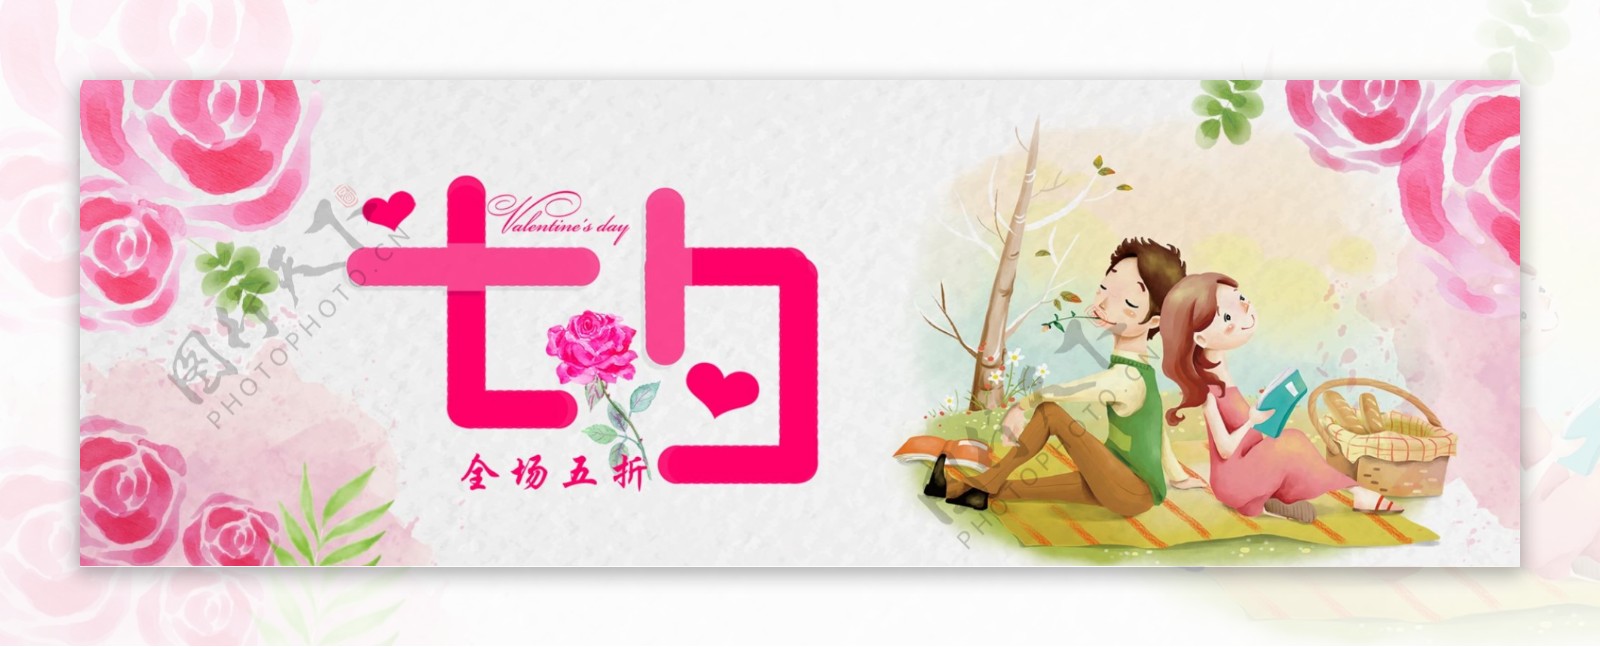 淘宝天猫电商七夕情人节浪漫情侣手绘海报banner模板设计下载